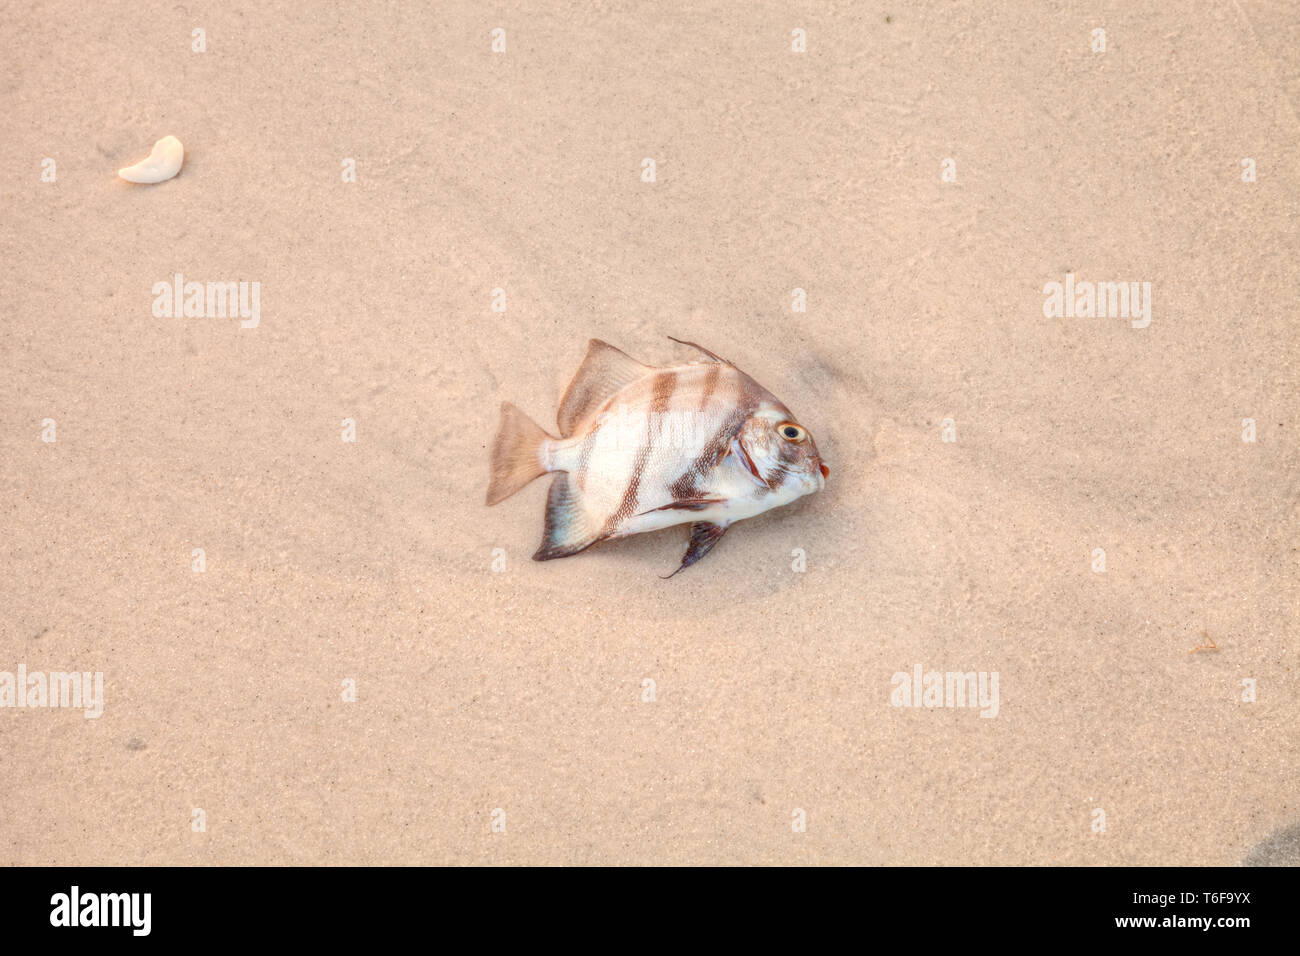 Atlantic spadefish Chaetodipterus faber est mort dans la marée rouge Banque D'Images